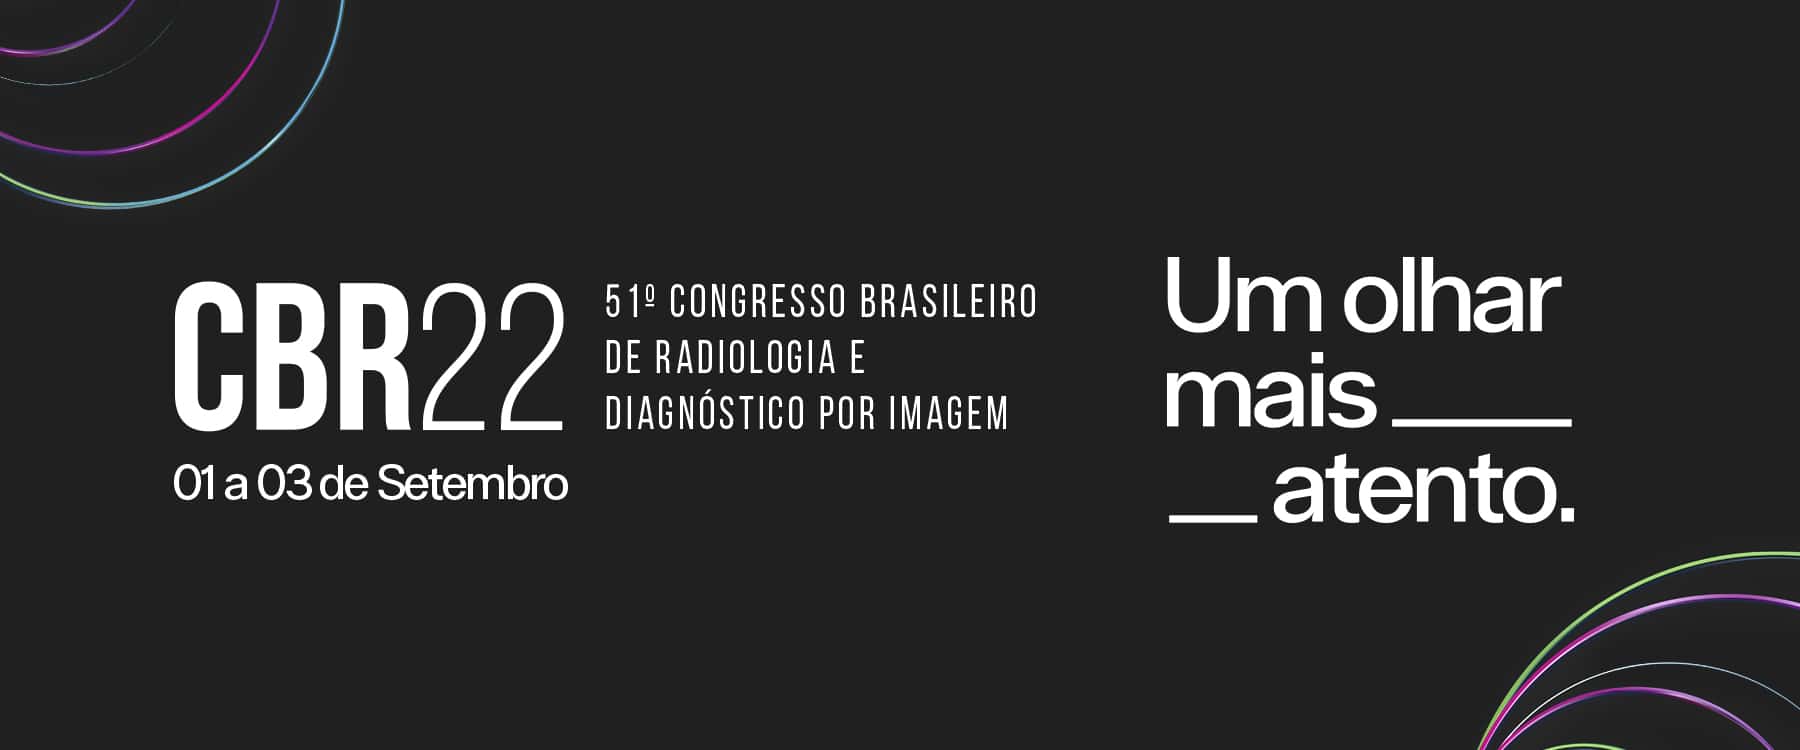 cbr22 congresso brasileiro radiologia